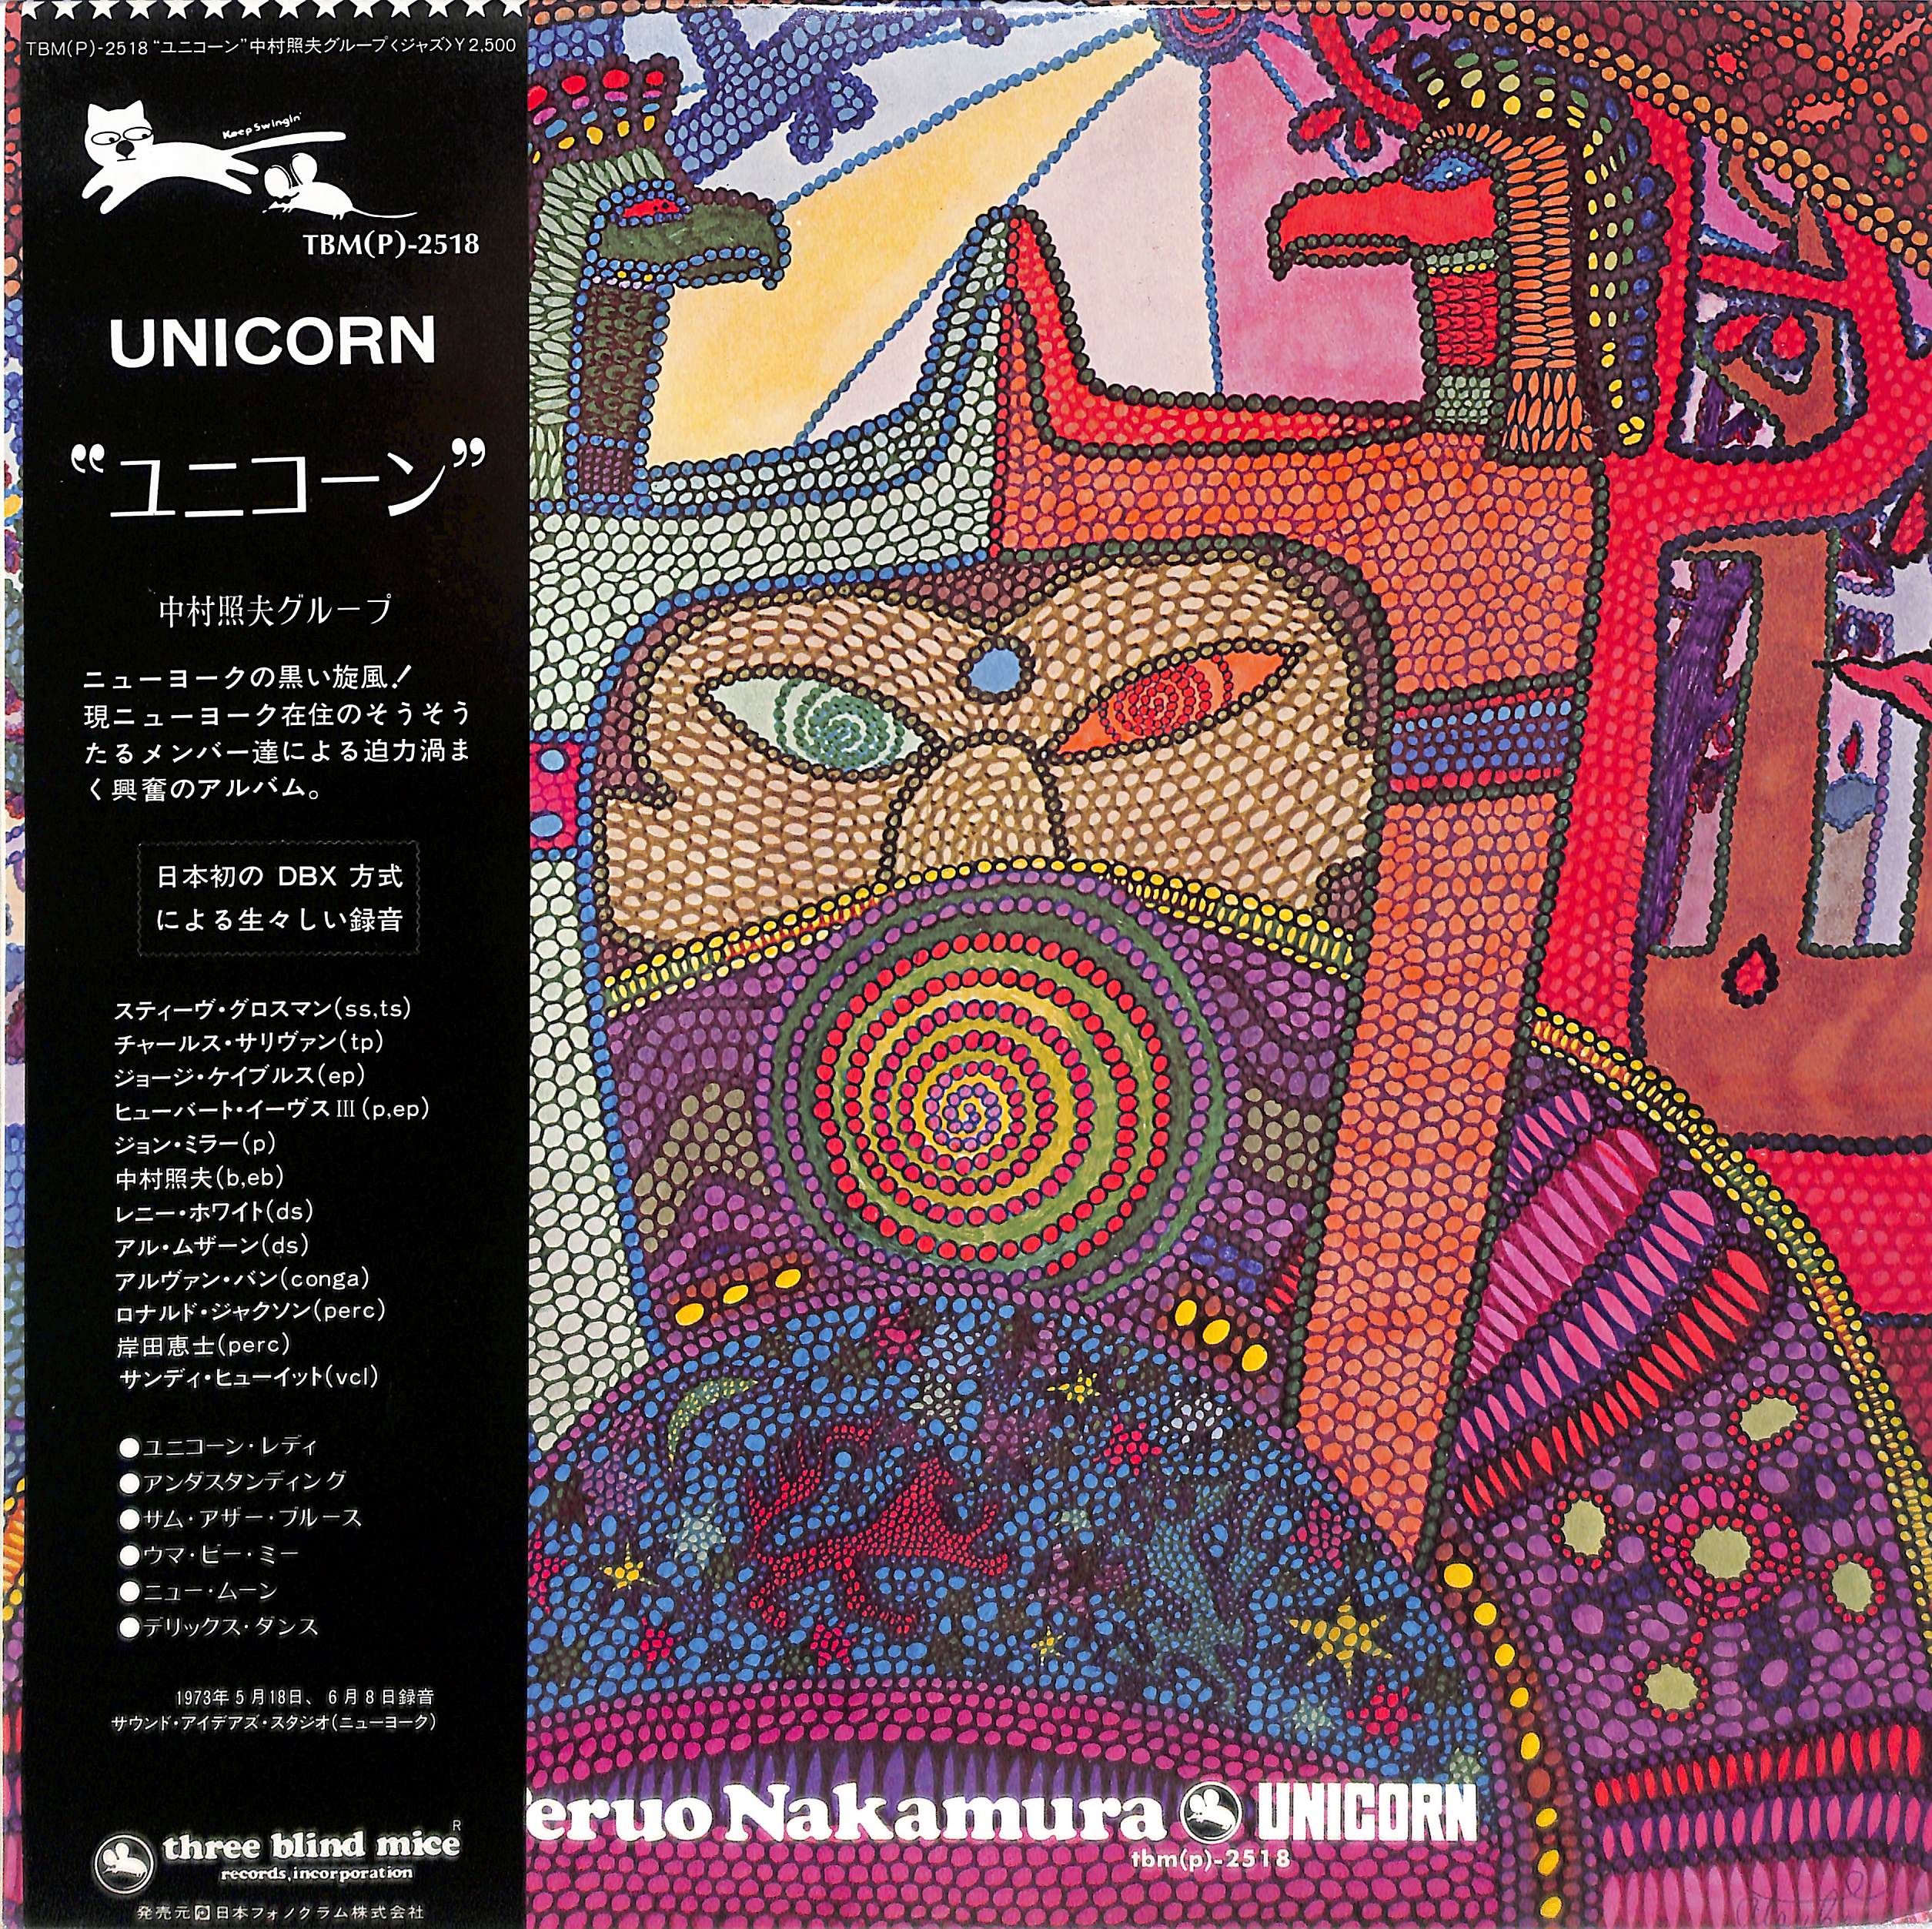 Unicorn by Teruo Nakamura | PosseCut.com